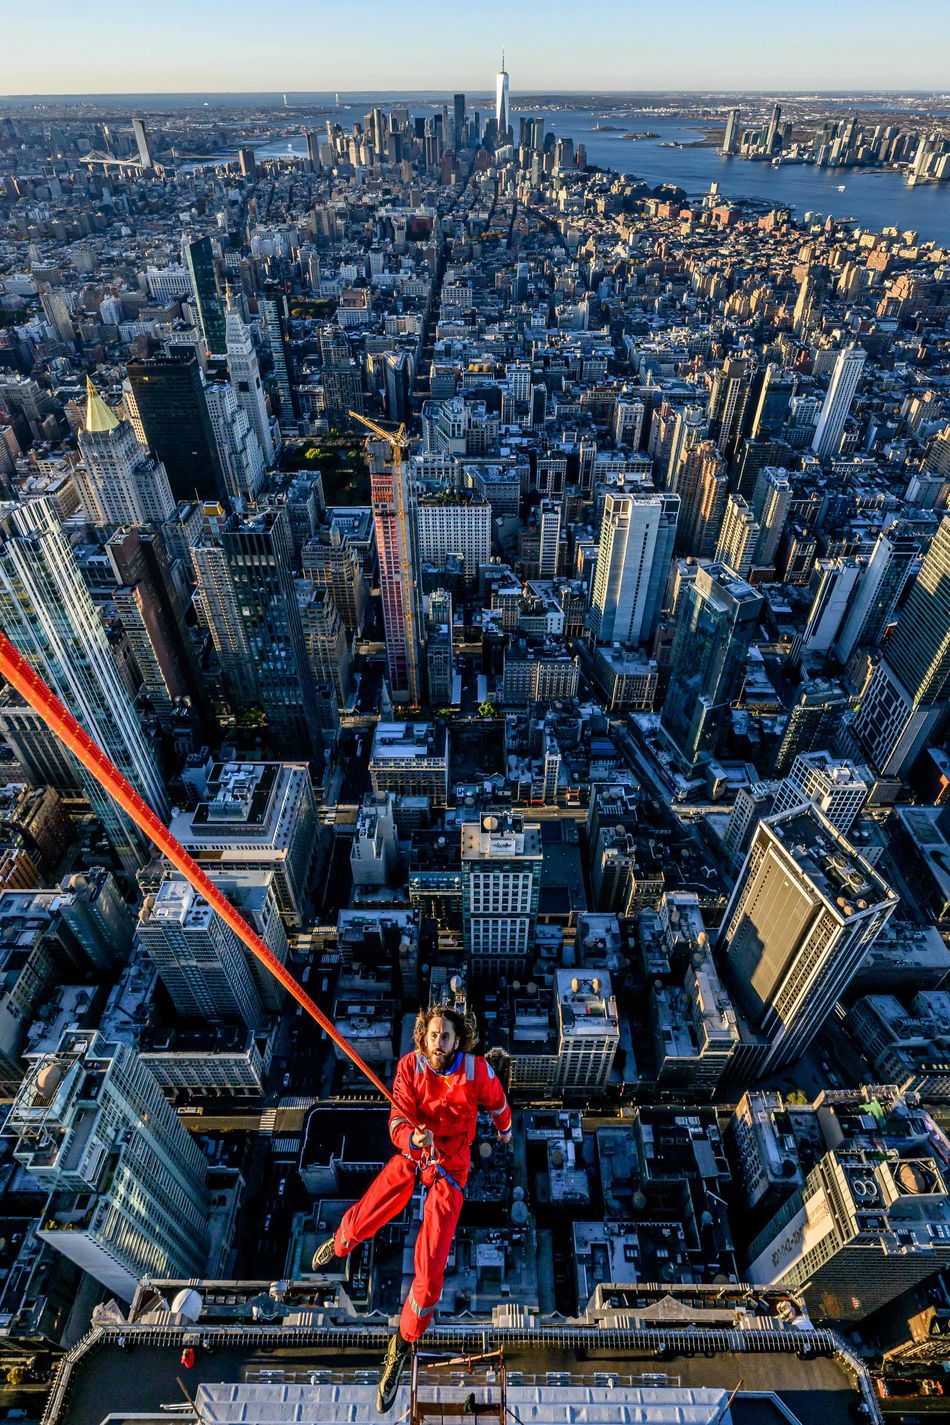 Jared Leto is de eerste persoon die het Empire State Building beklimt